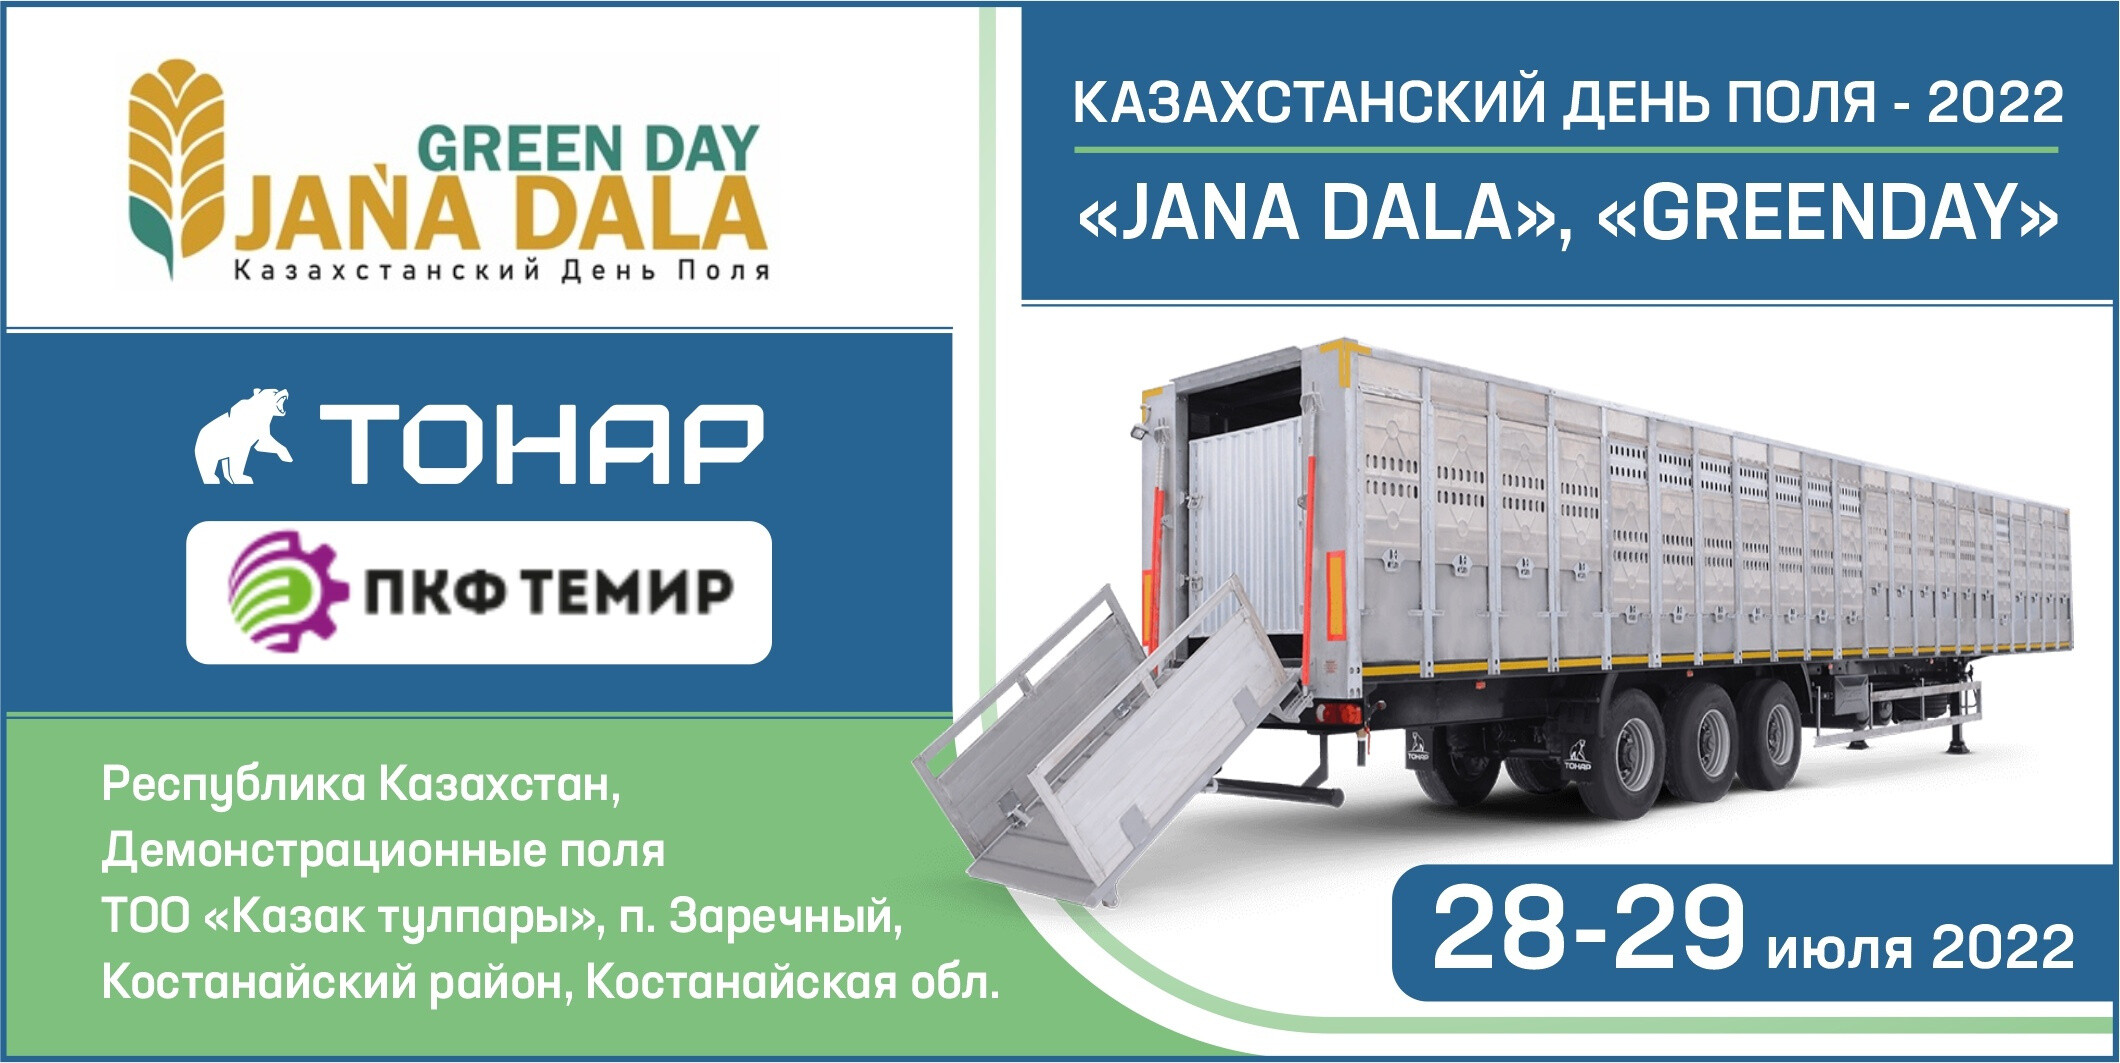 МЗ «Тонар» участвует в выставке-демонстрации «Казахстанский День поля «Jańa Dala / Green Day ‘2022»